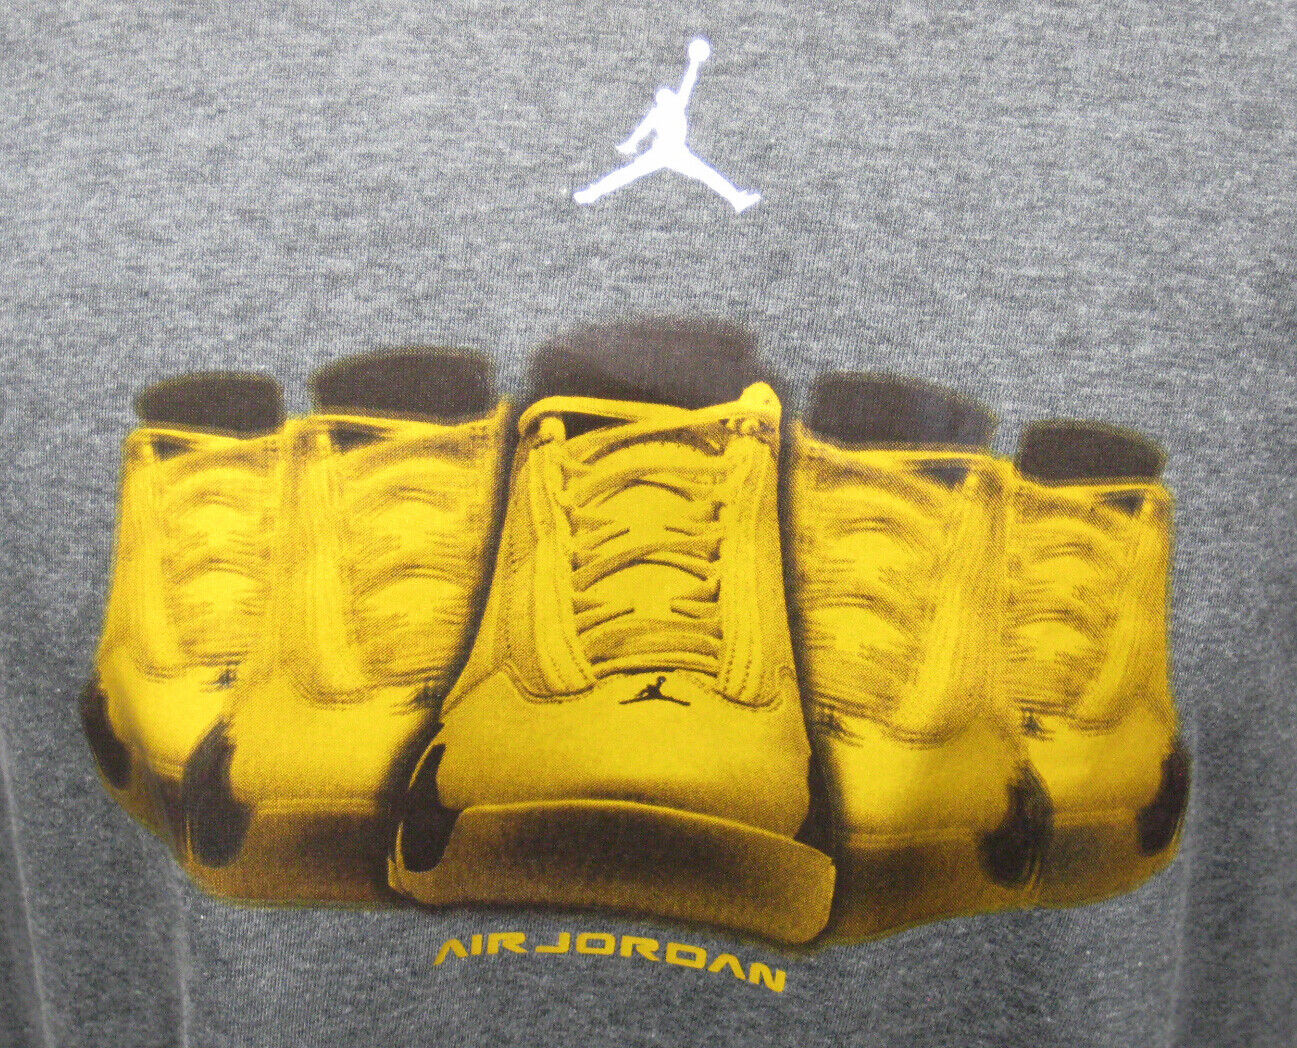 Interesting Air Jordan 14 Retro Playground T SHIRT SZ XL 14 LAST SHOT CHUTNEY XIV 2005 Nike on eBay